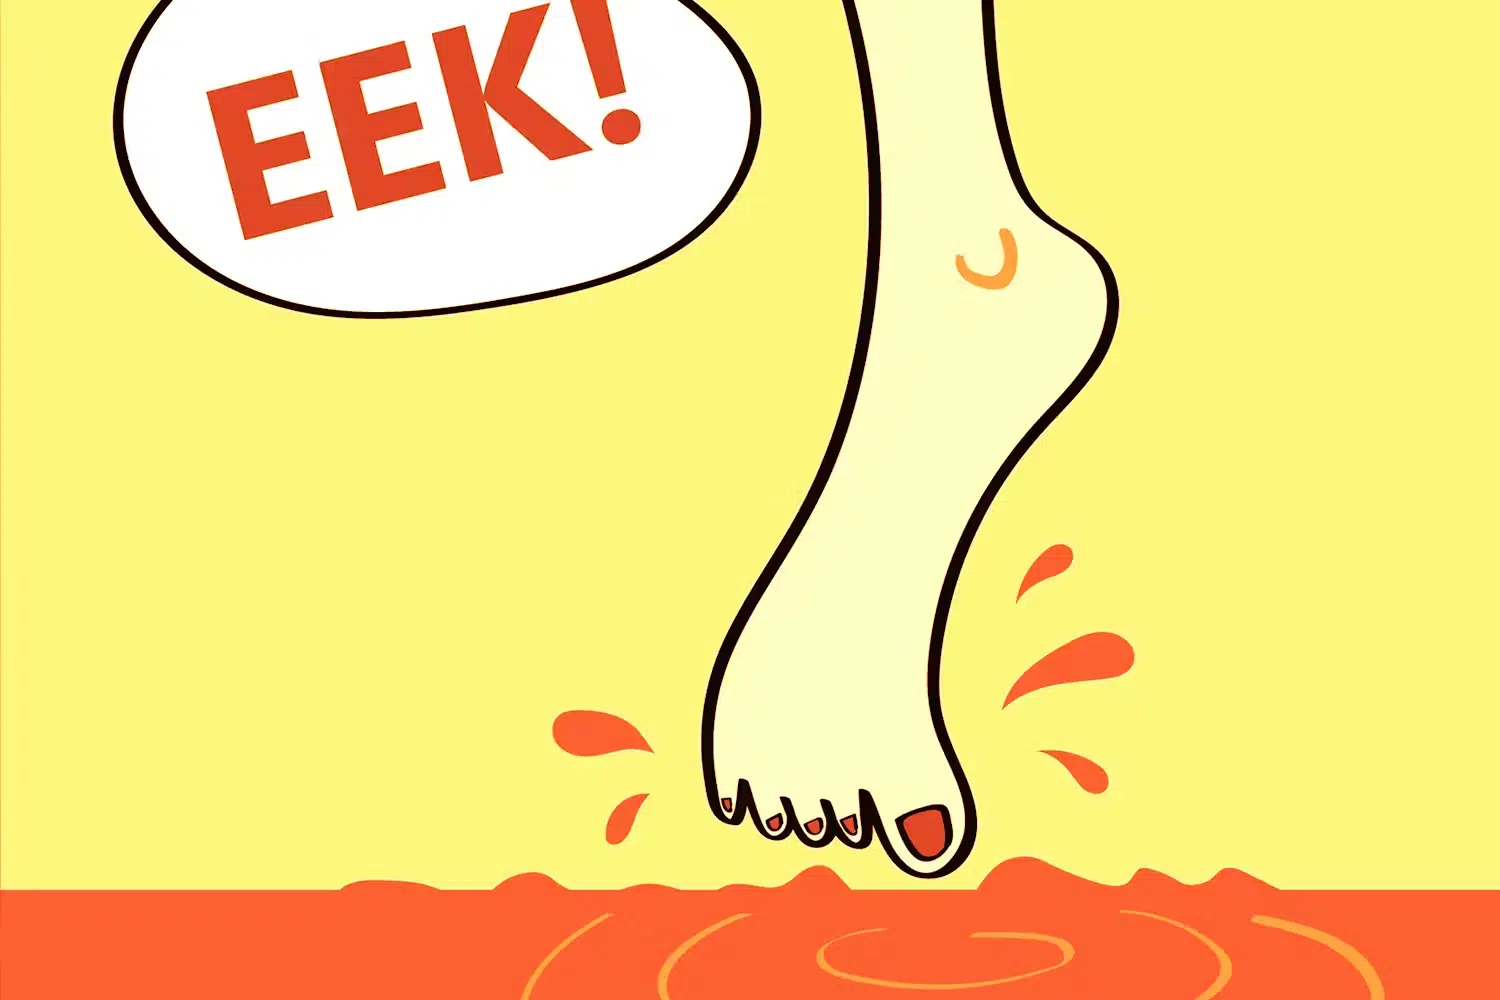 cartoon foot with cartoon bubble that says "eek!"